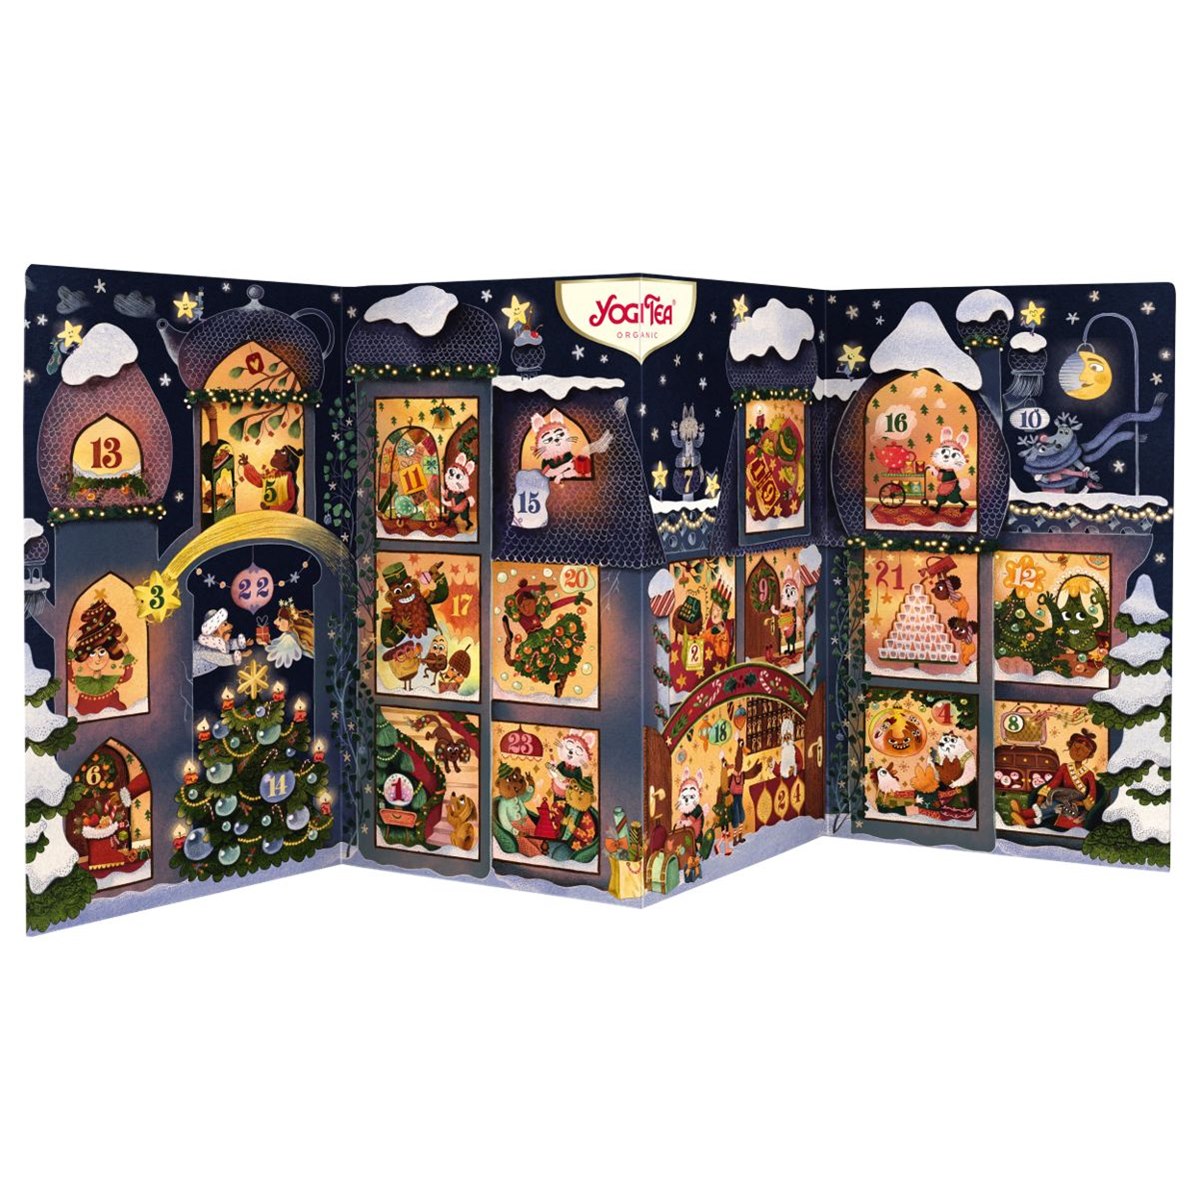 Inside Look at Yogi Tea Christmas Advent Calendar